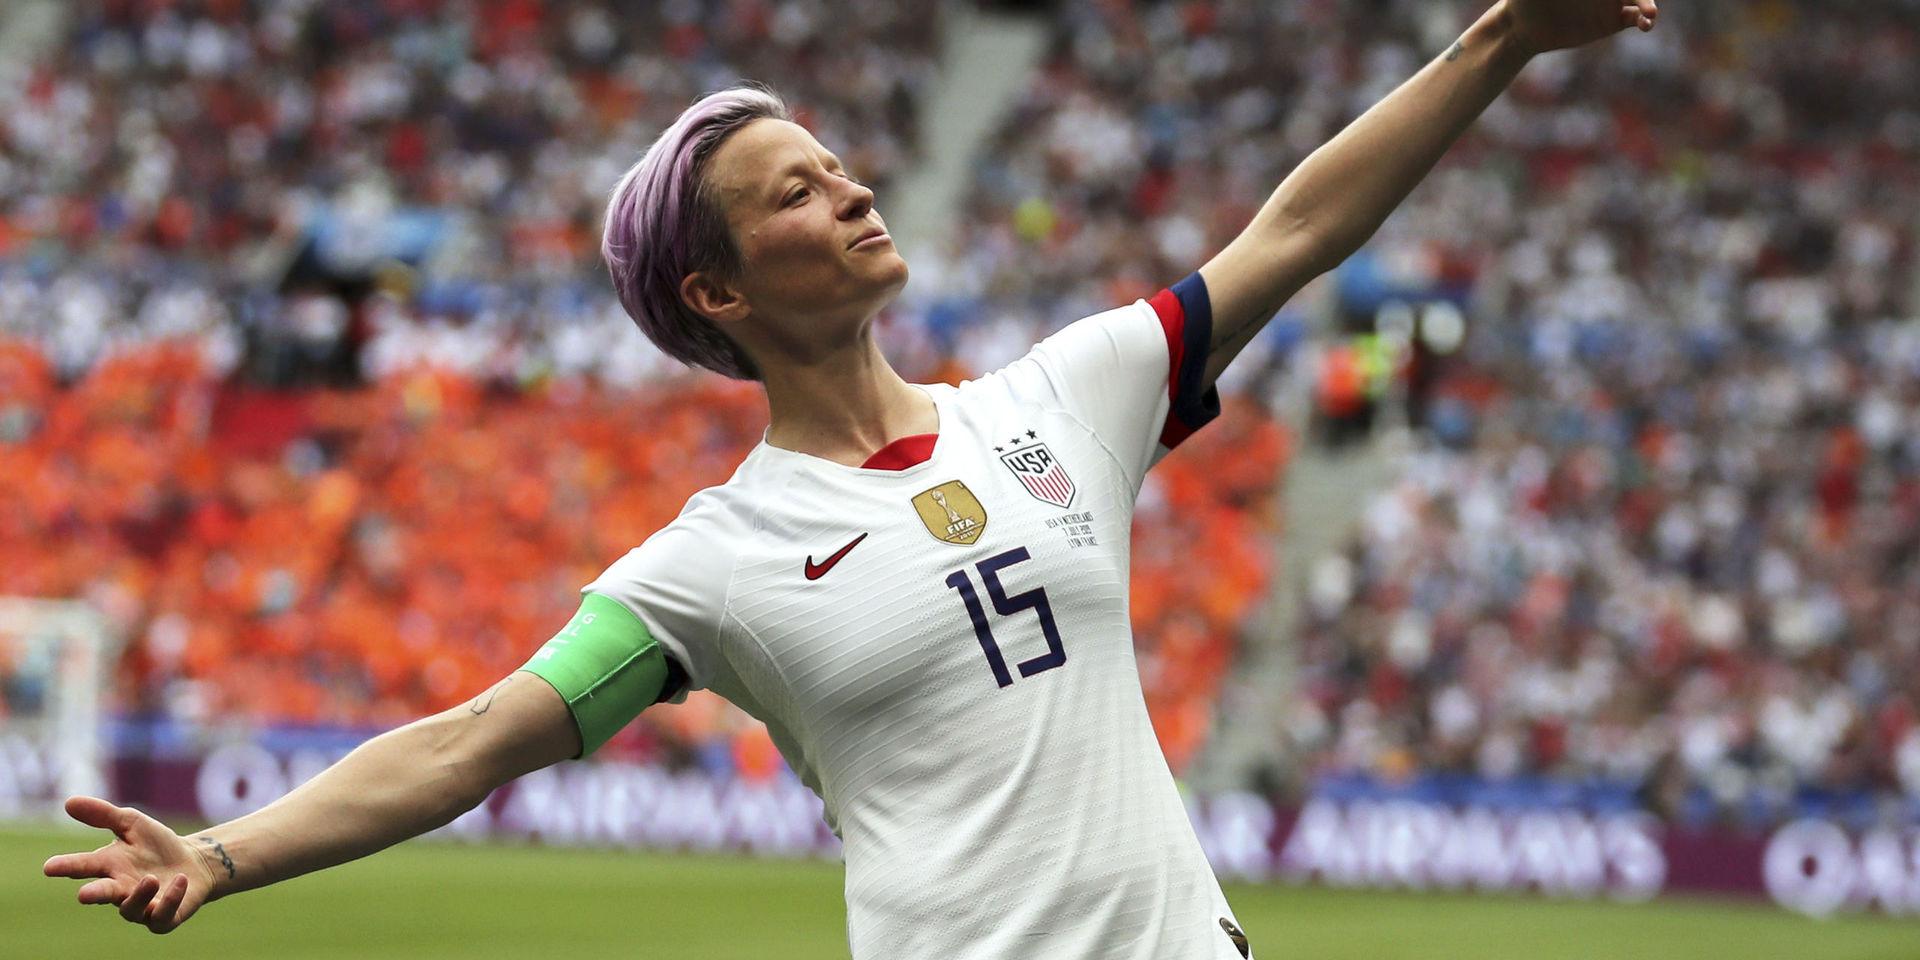 USA:s Megan Rapinoe satte stark prägel på sommarens fotbolls-VM. Här gör hon sin patenterade målgest efter en av sina fullträffar under mästerskapet.